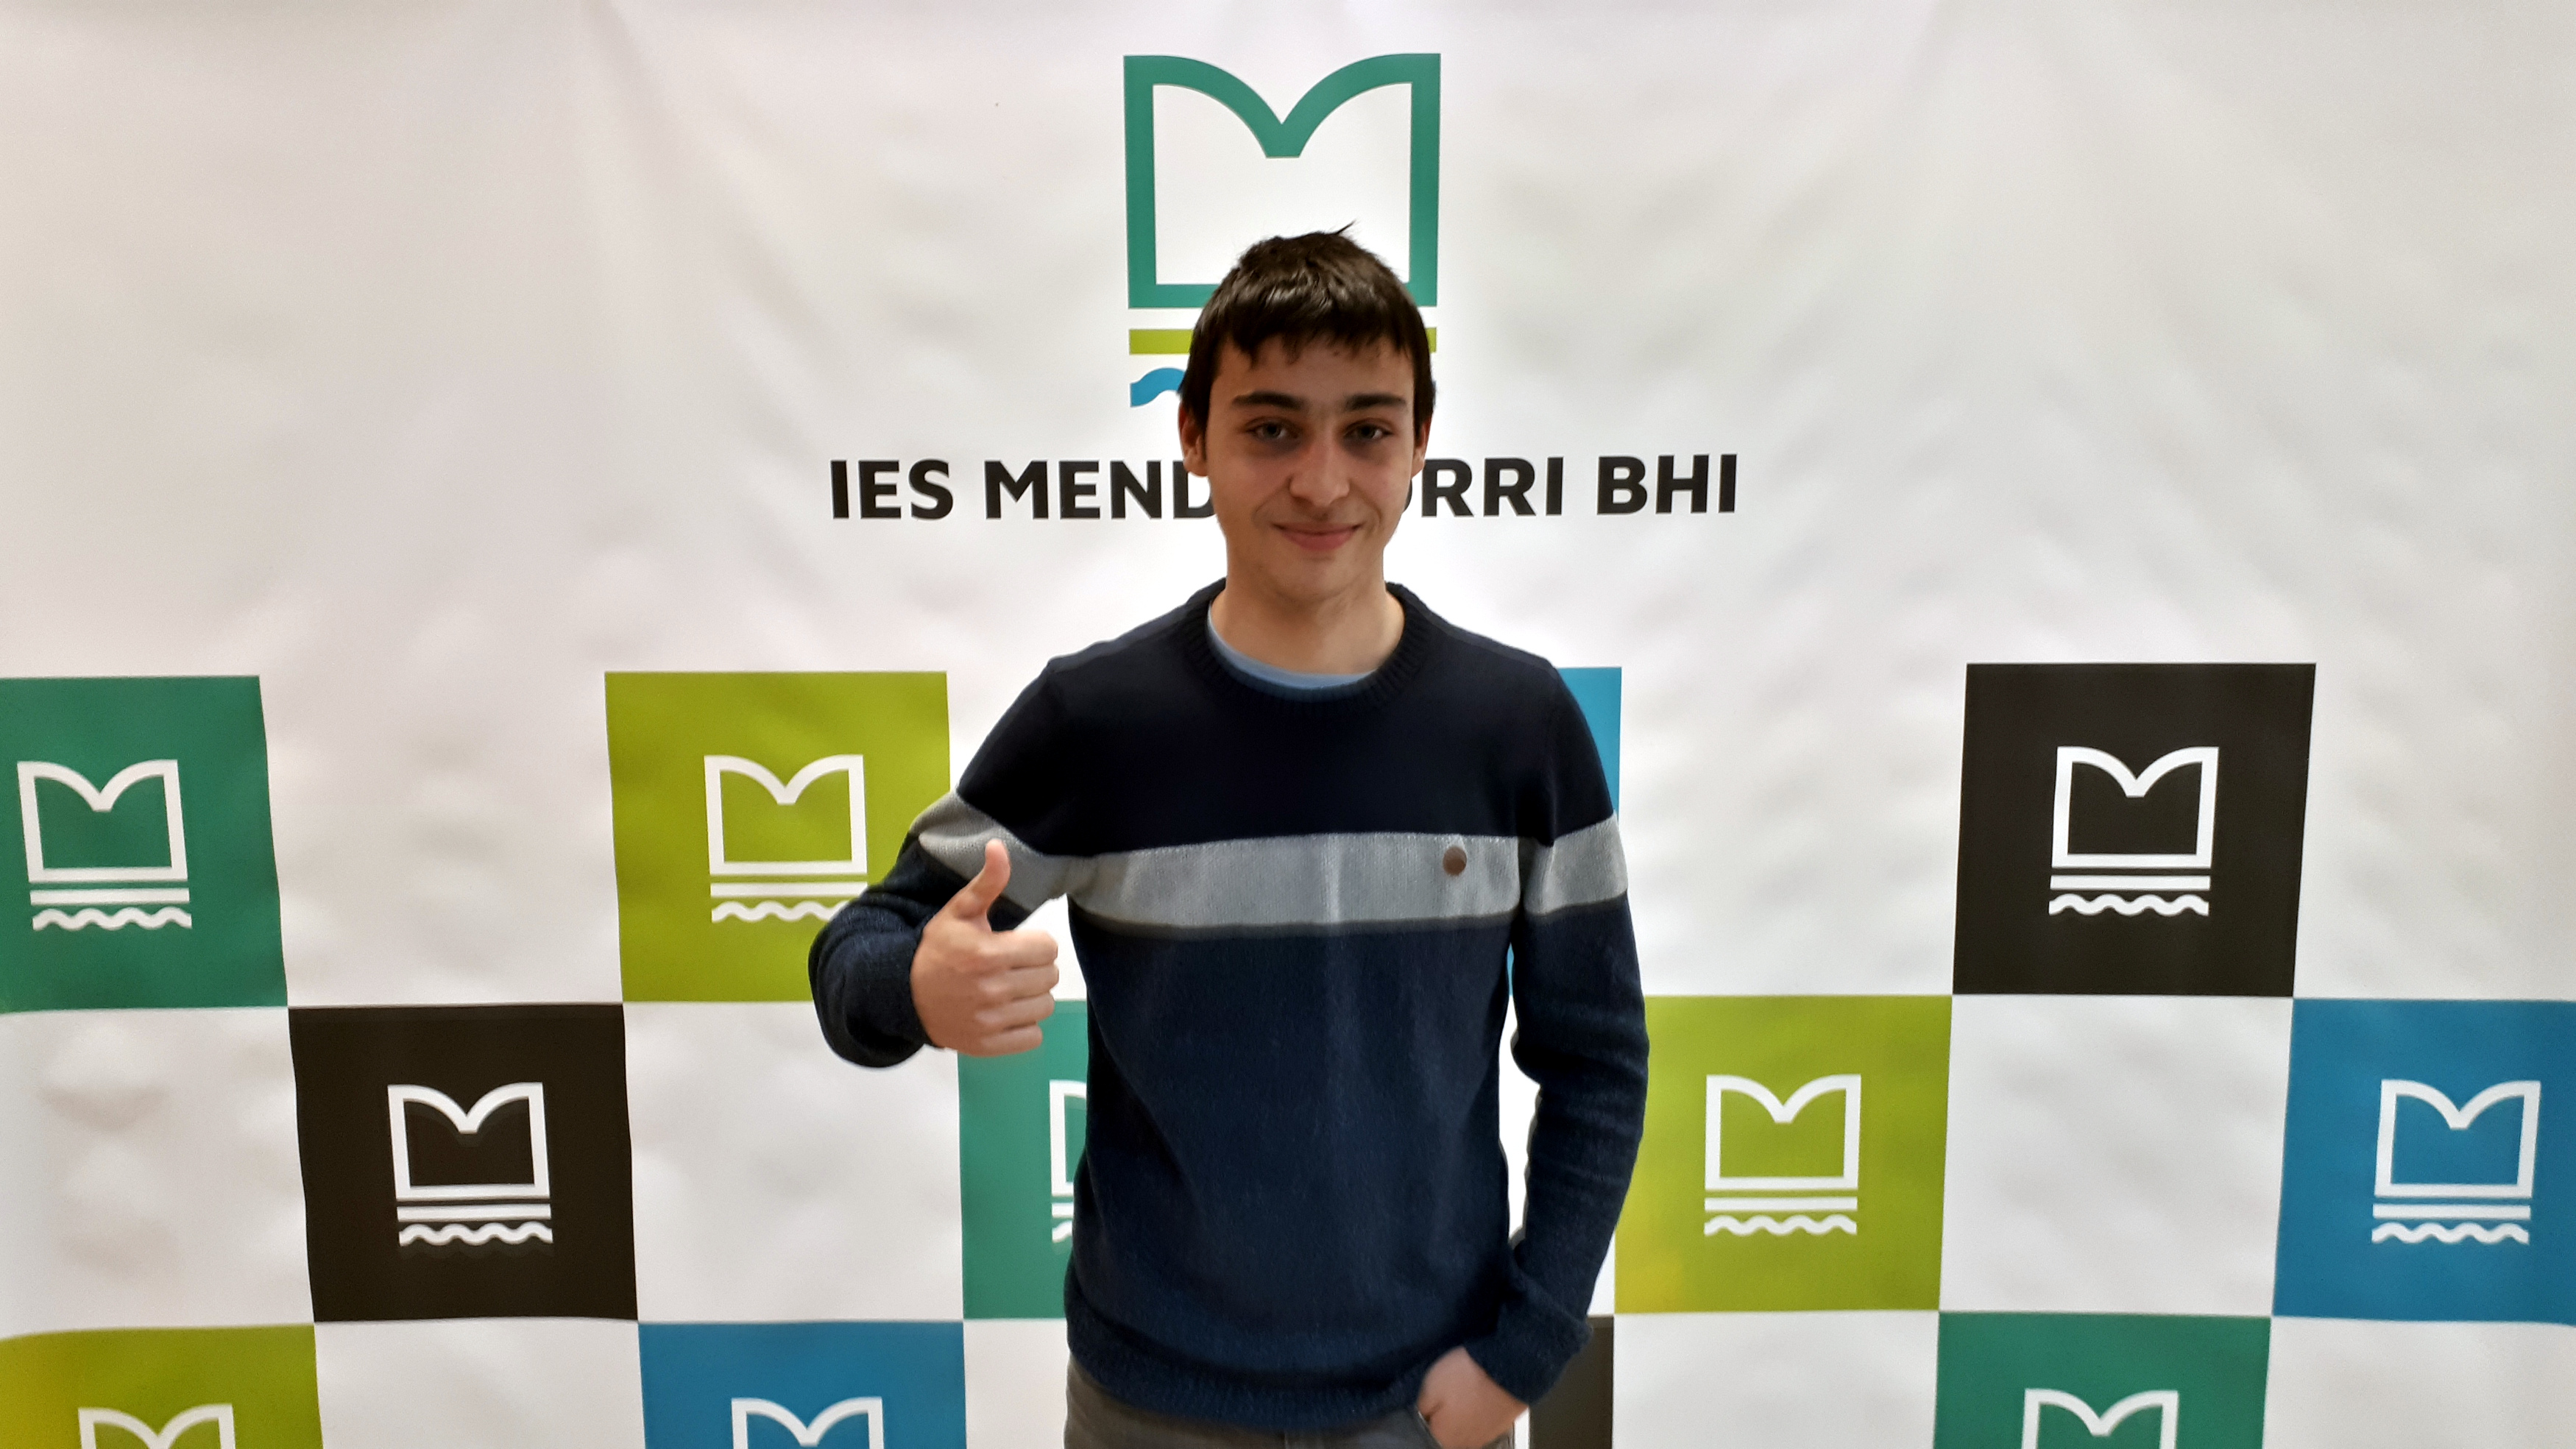 Ander Miranda del IES Mendillorri BHI es proclamado campeón de la fase navarra de la Olimpiada de Matemáticas.